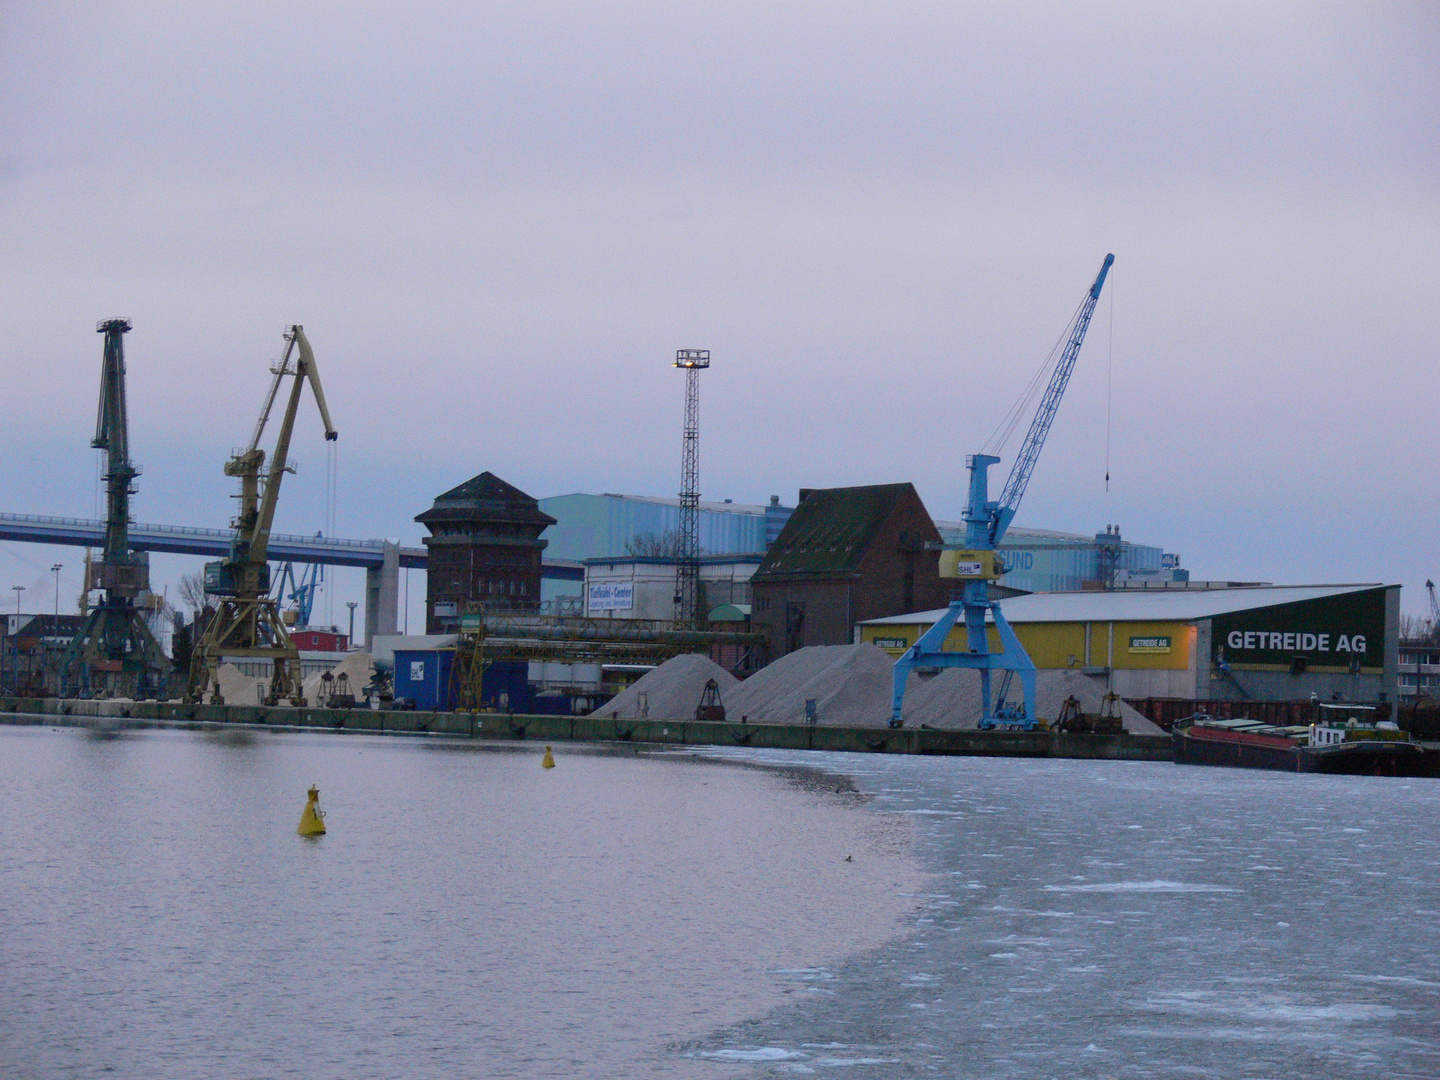 Der Hafen von Stralsund - kalt aber noch nicht ganz zugefroren